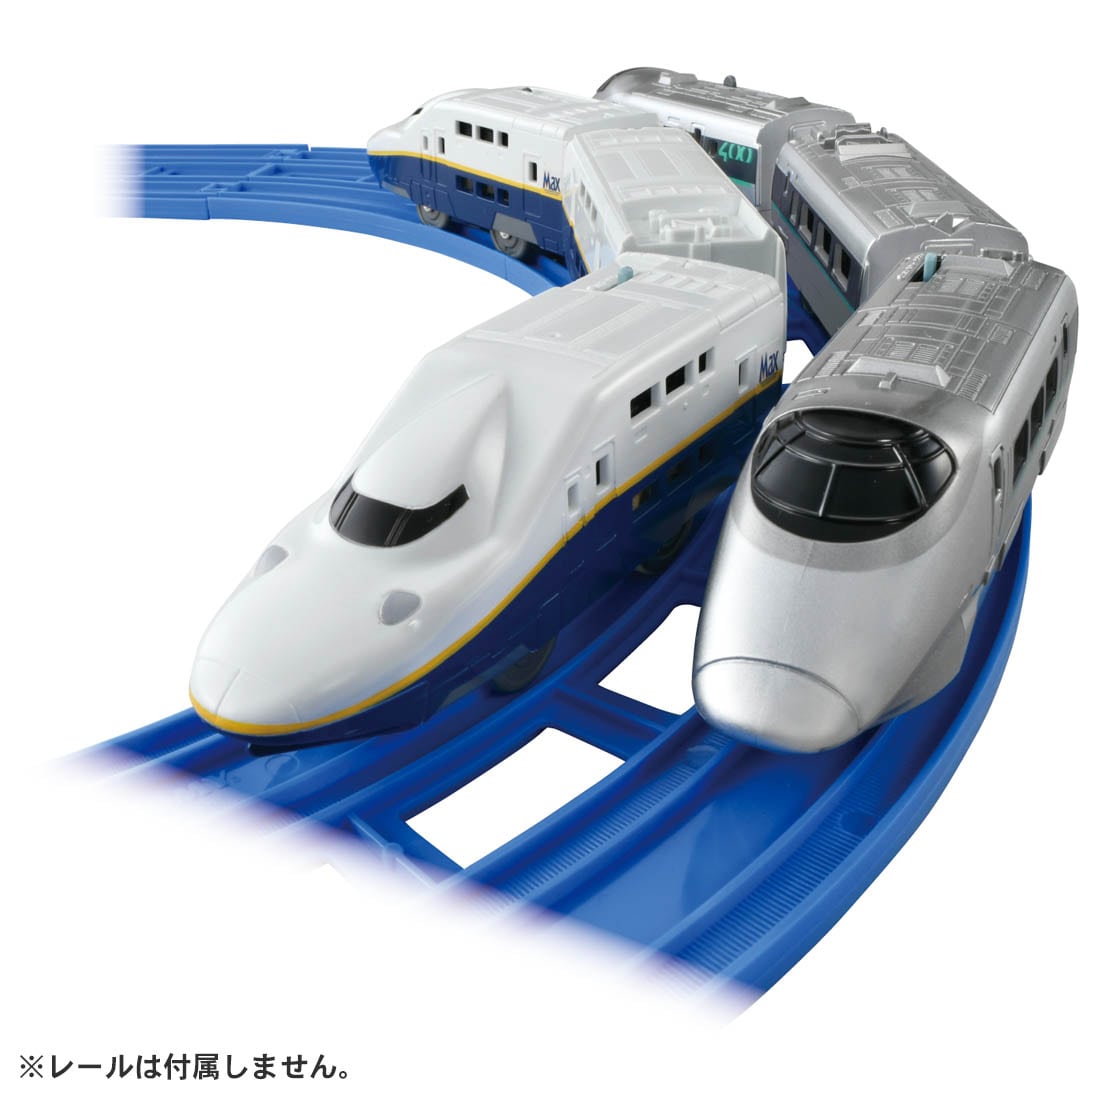 プラレール 新幹線YEAR2022 400系つばさ&E4系Max連結セット